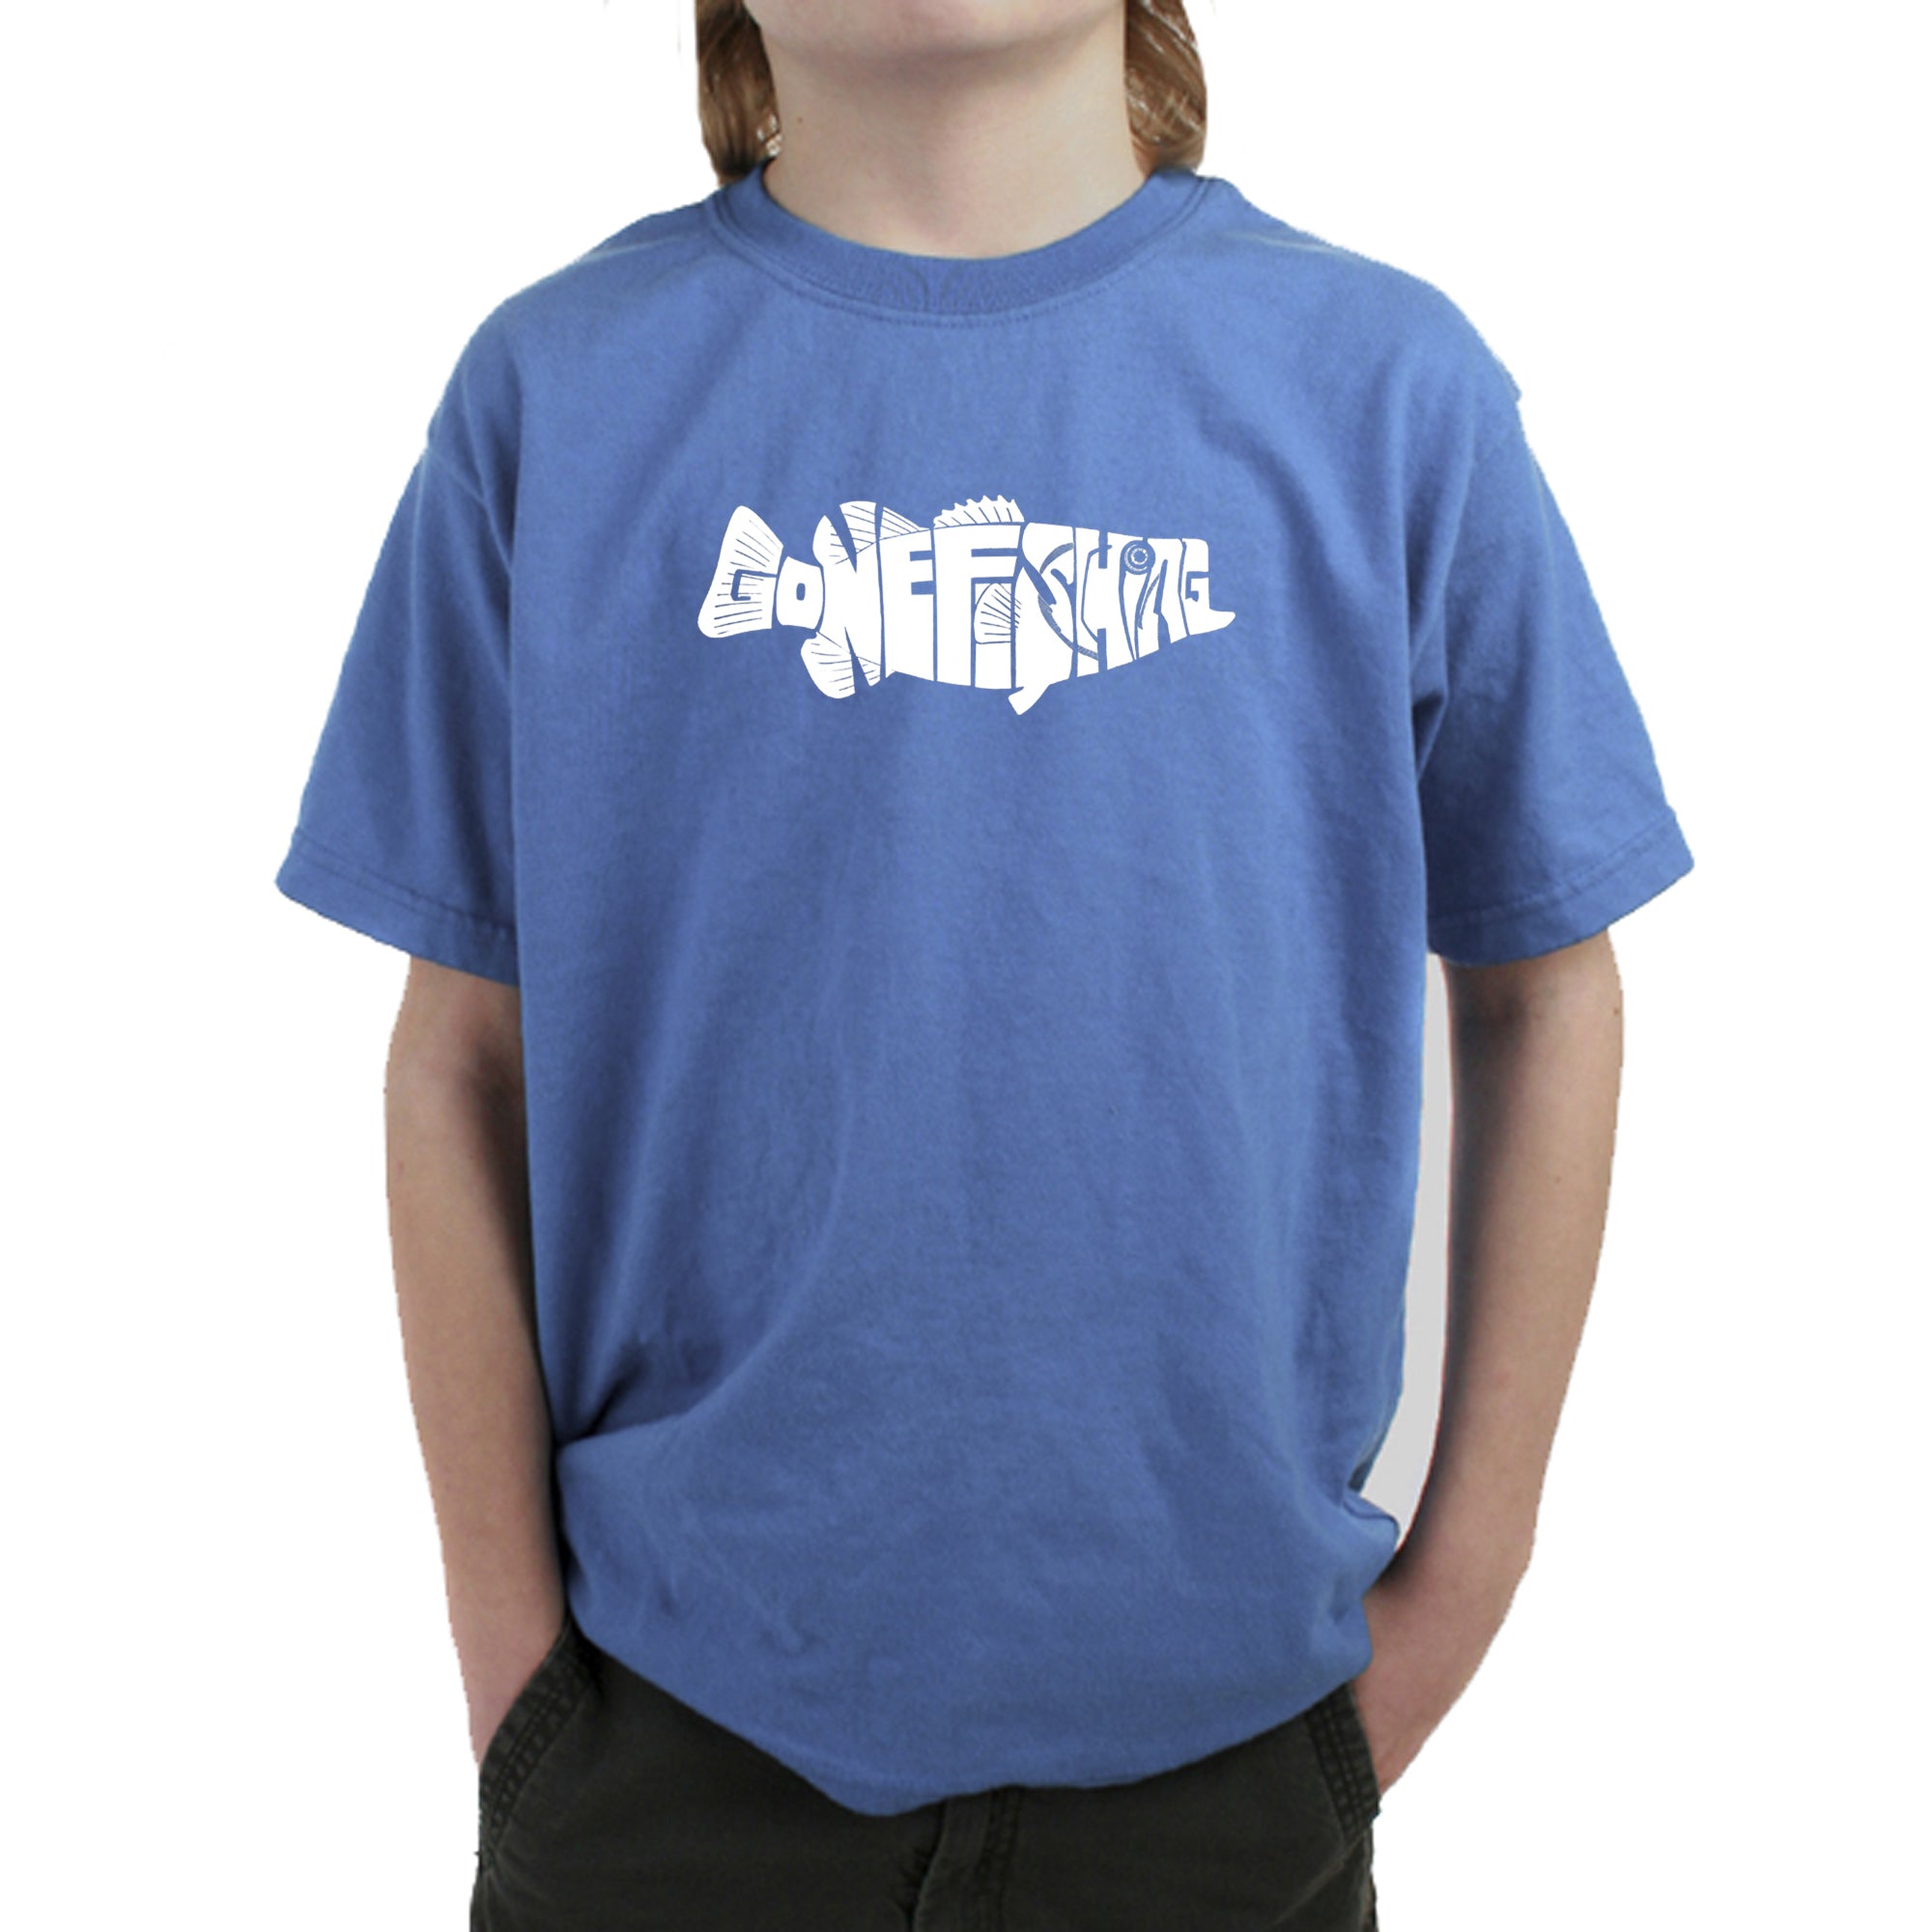 Bass Gone Fishing - Boy's Word Art T-Shirt XL / Carolina